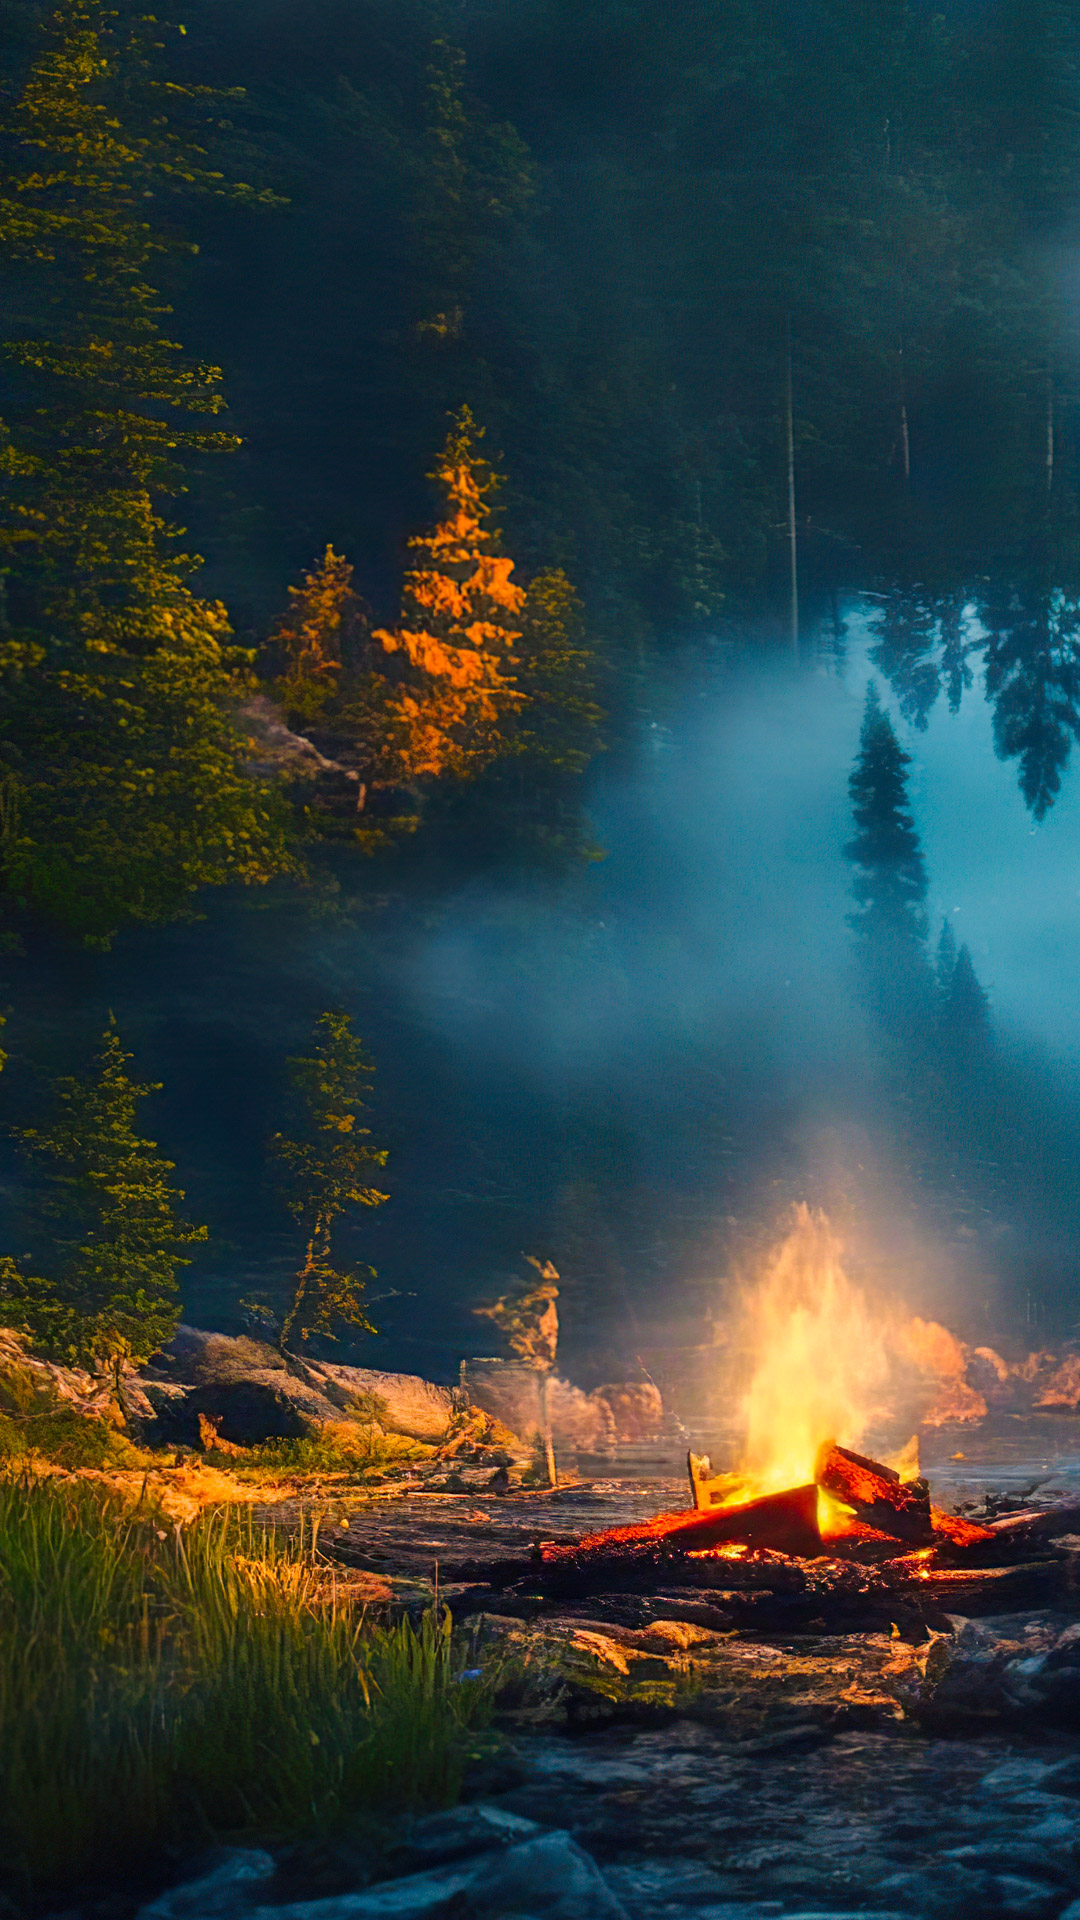 Perdez-vous dans la sérénité avec notre fond d'écran de paysage frais, dépeignant un campement paisible au bord d'un lac avec un feu de camp vacillant, entouré d'une forêt sauvage sombre.